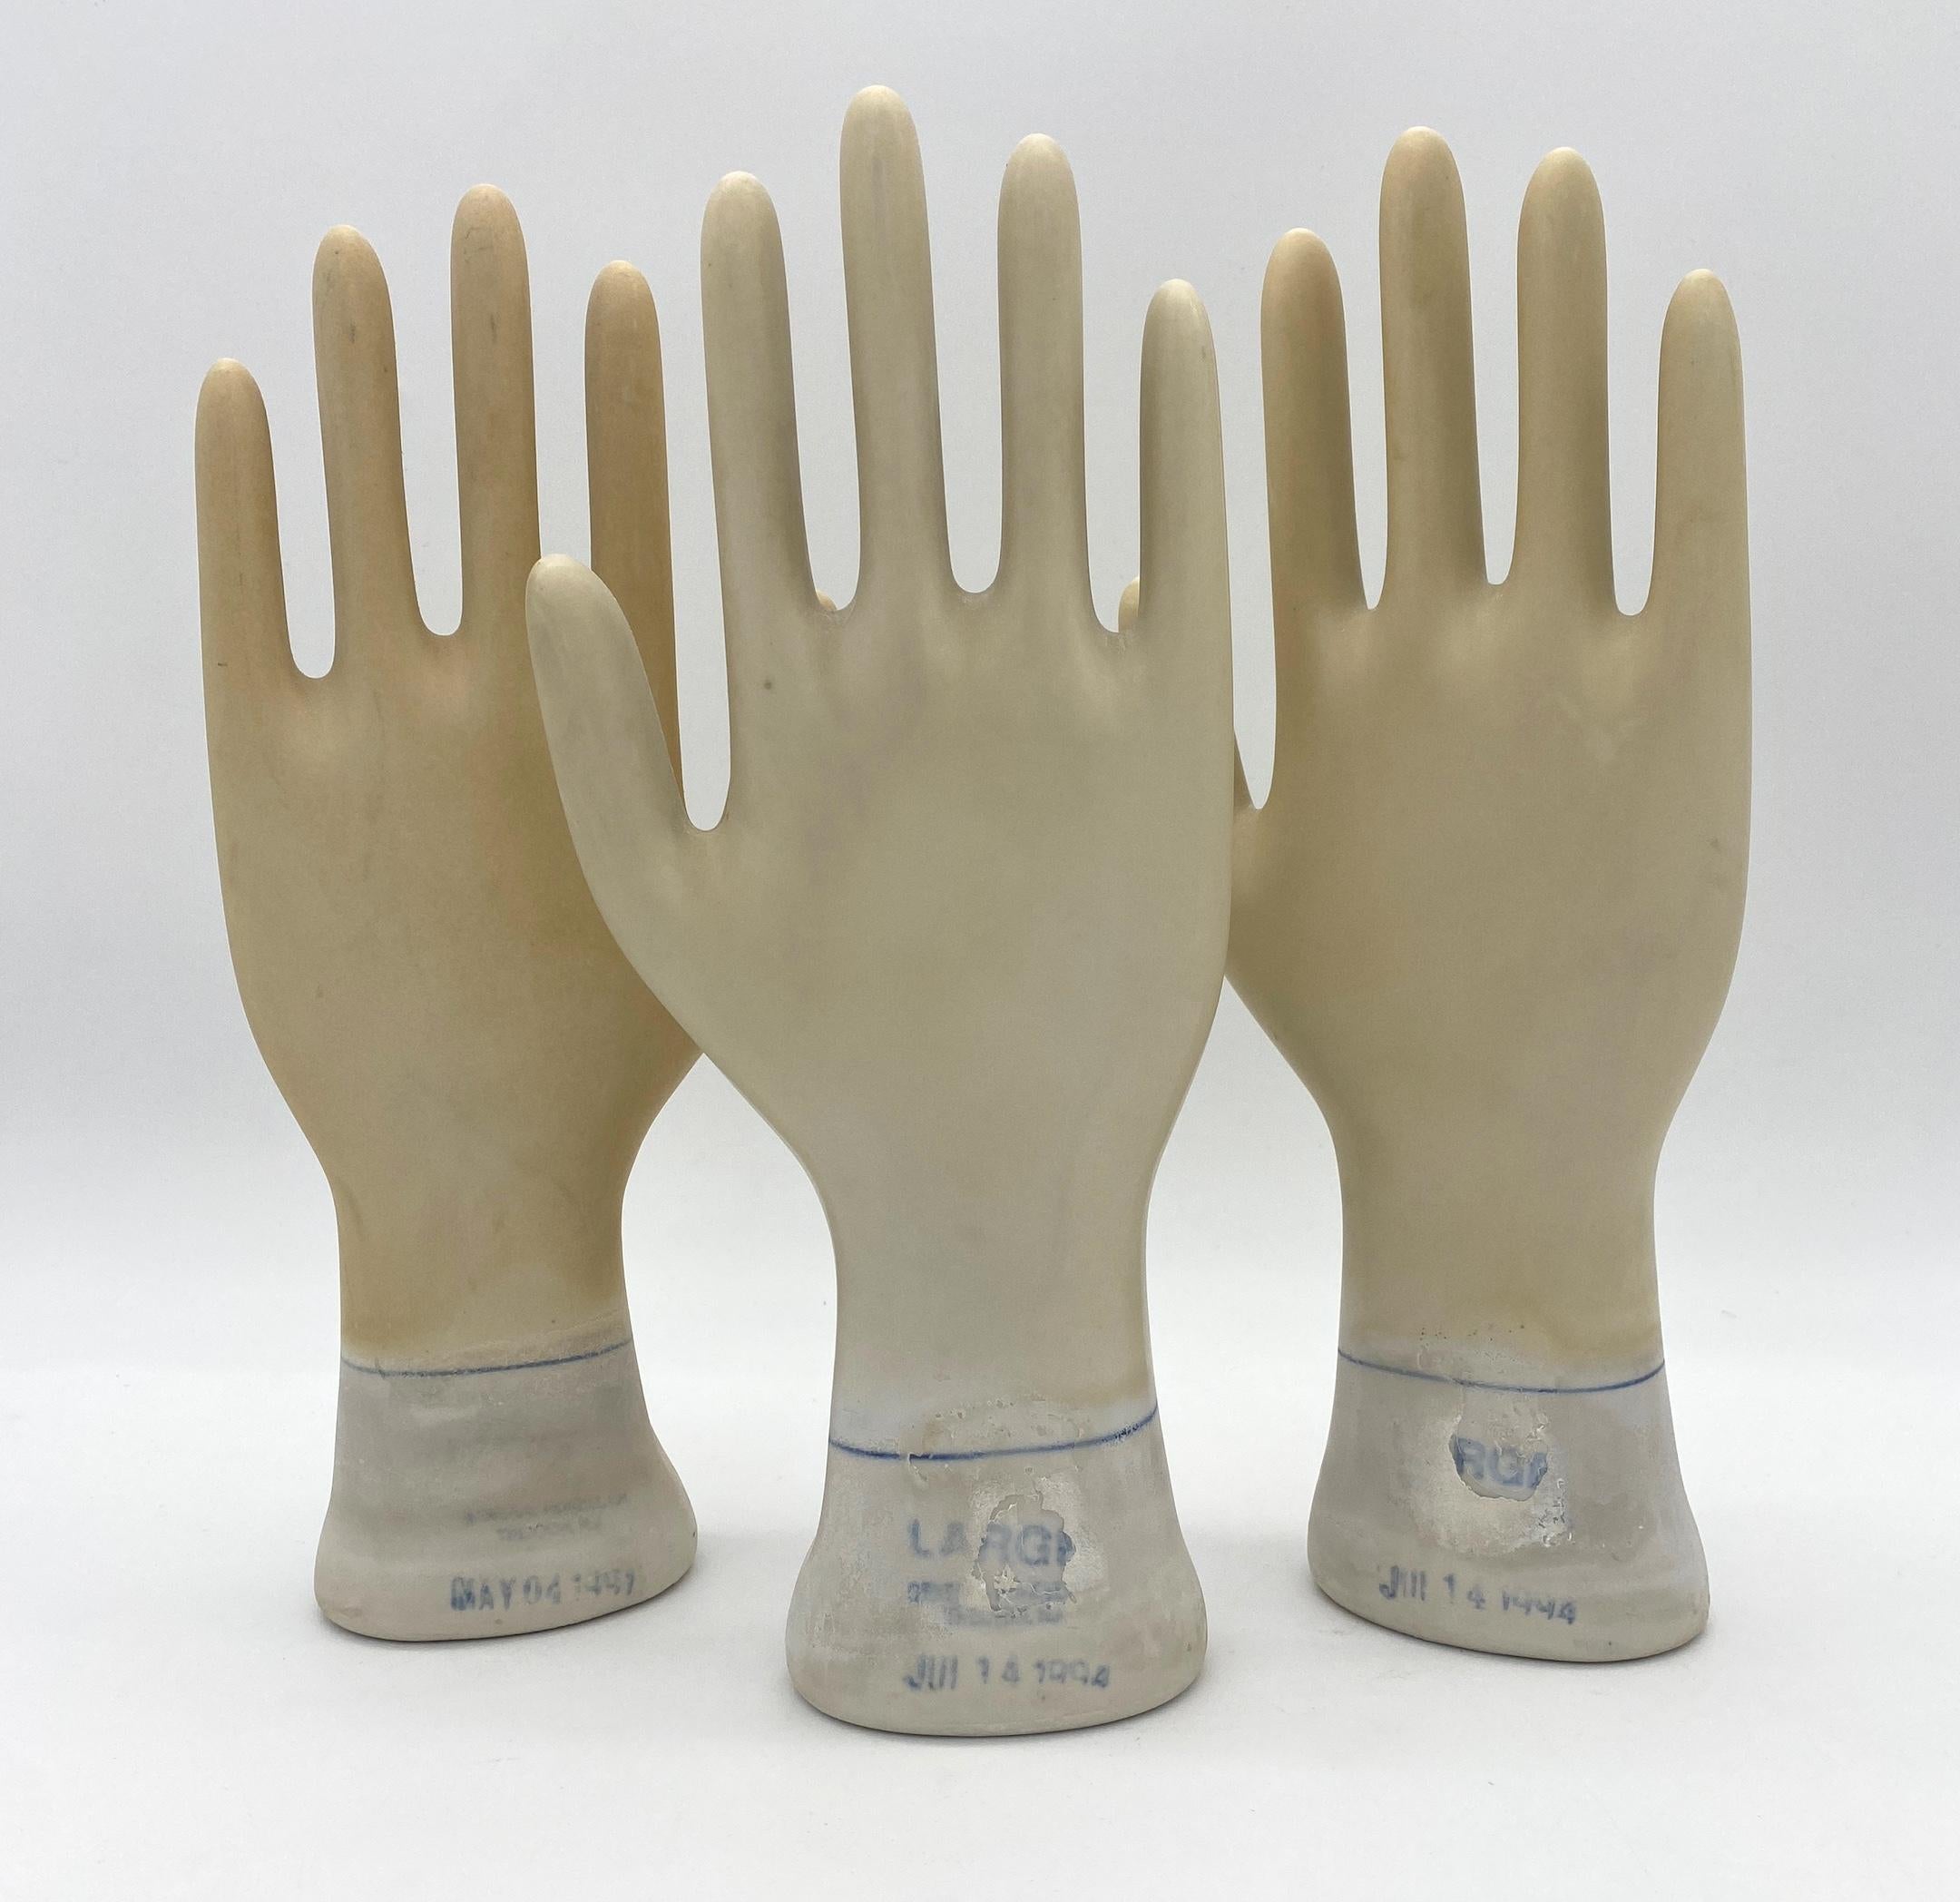 Satz von drei Vintage American Industrial Figural Porzellan Handschuh Formen 
USA, 1994, datiert und beschriftet 

Ein bemerkenswerter Satz von drei Vintage American Industrial Figural Porcelain Glove Molds, ein einzigartiges Relikt aus der